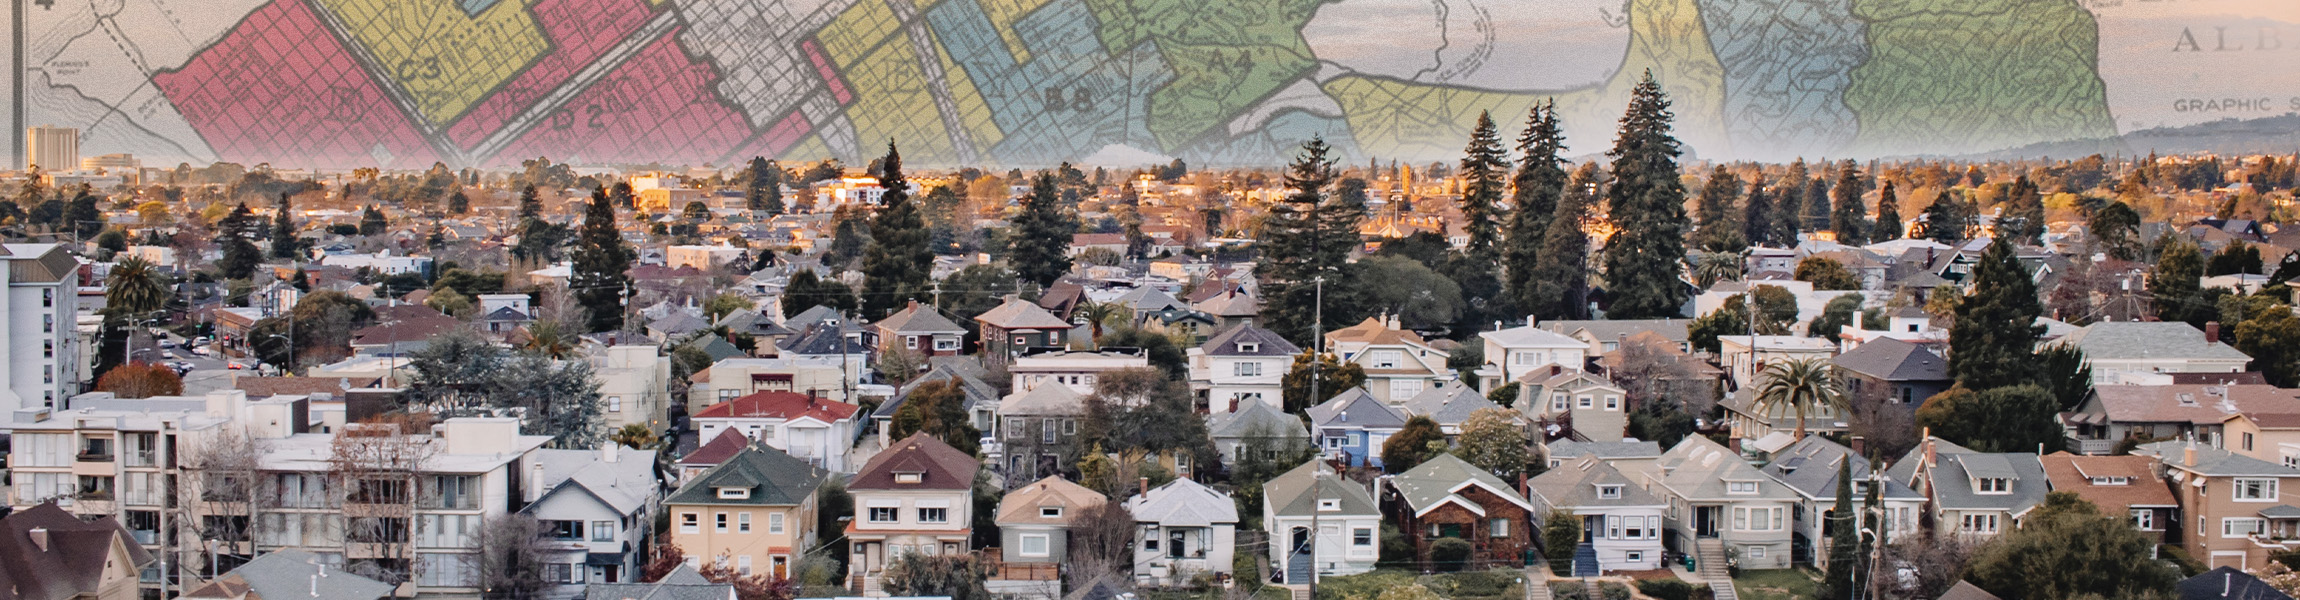 Dash & Dot  City of South San Francisco